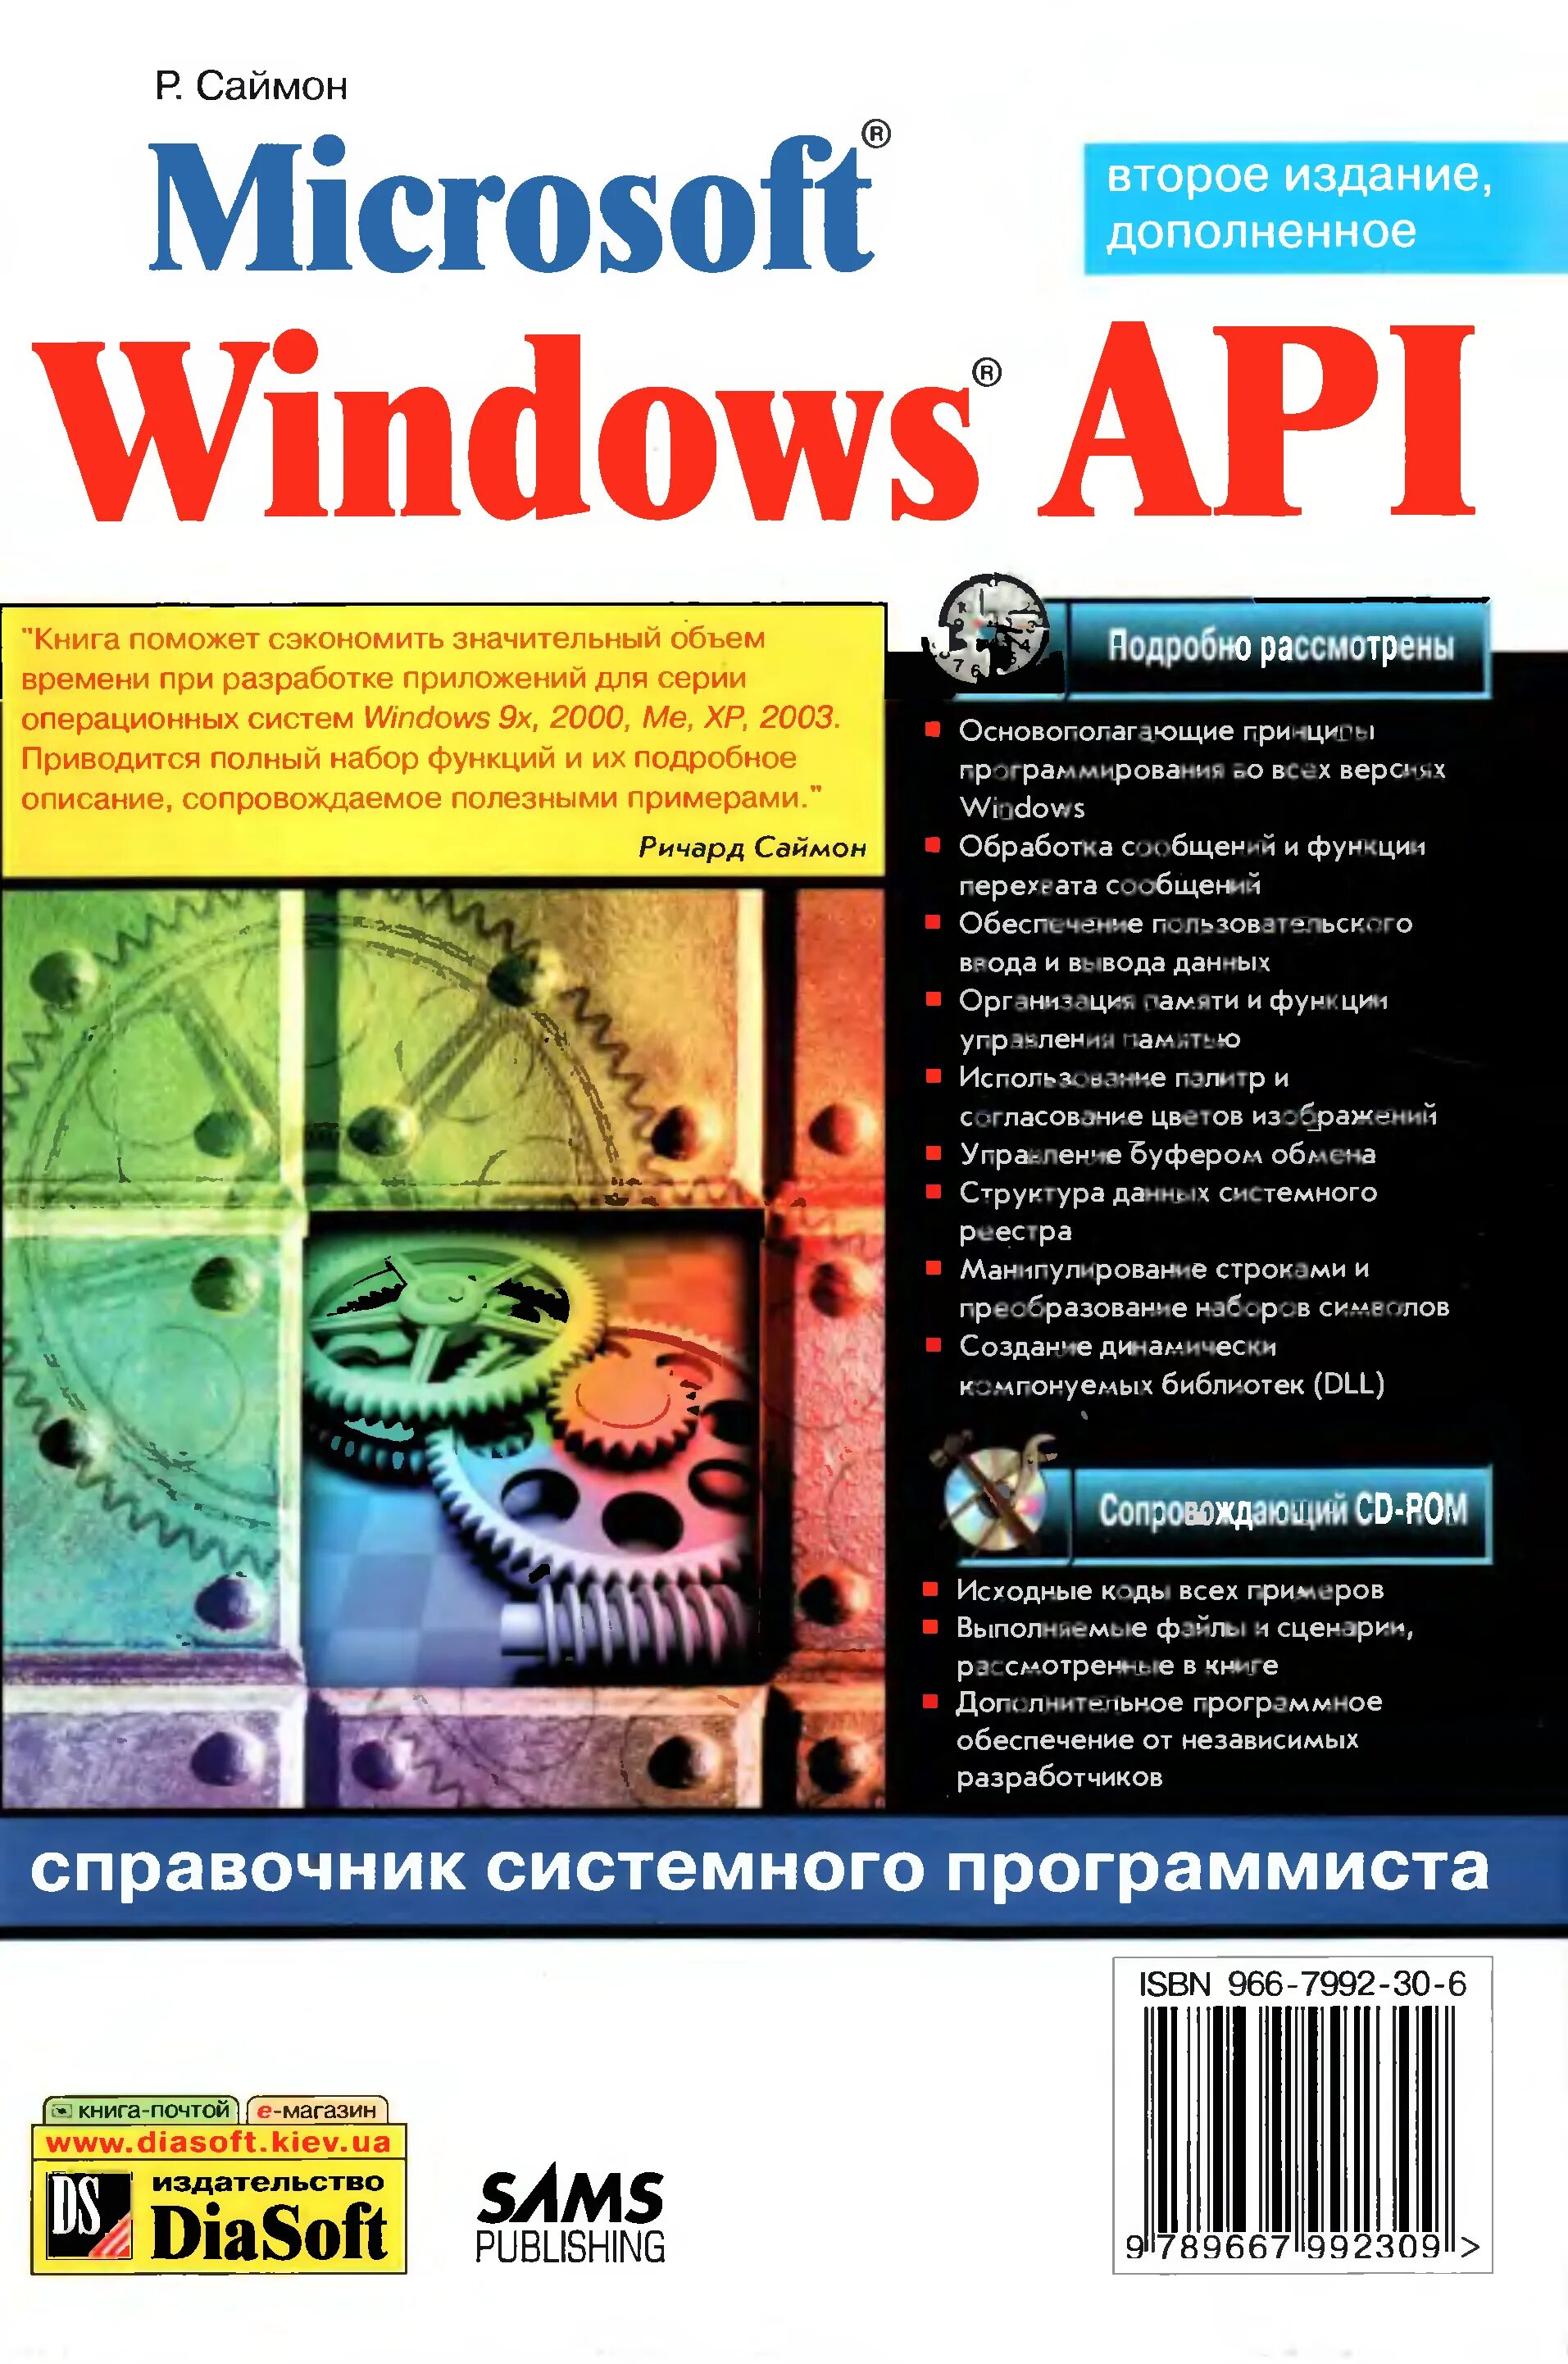 Системное программирование Windows книги. Windows API. Справочник виндовс. Windows API книги.